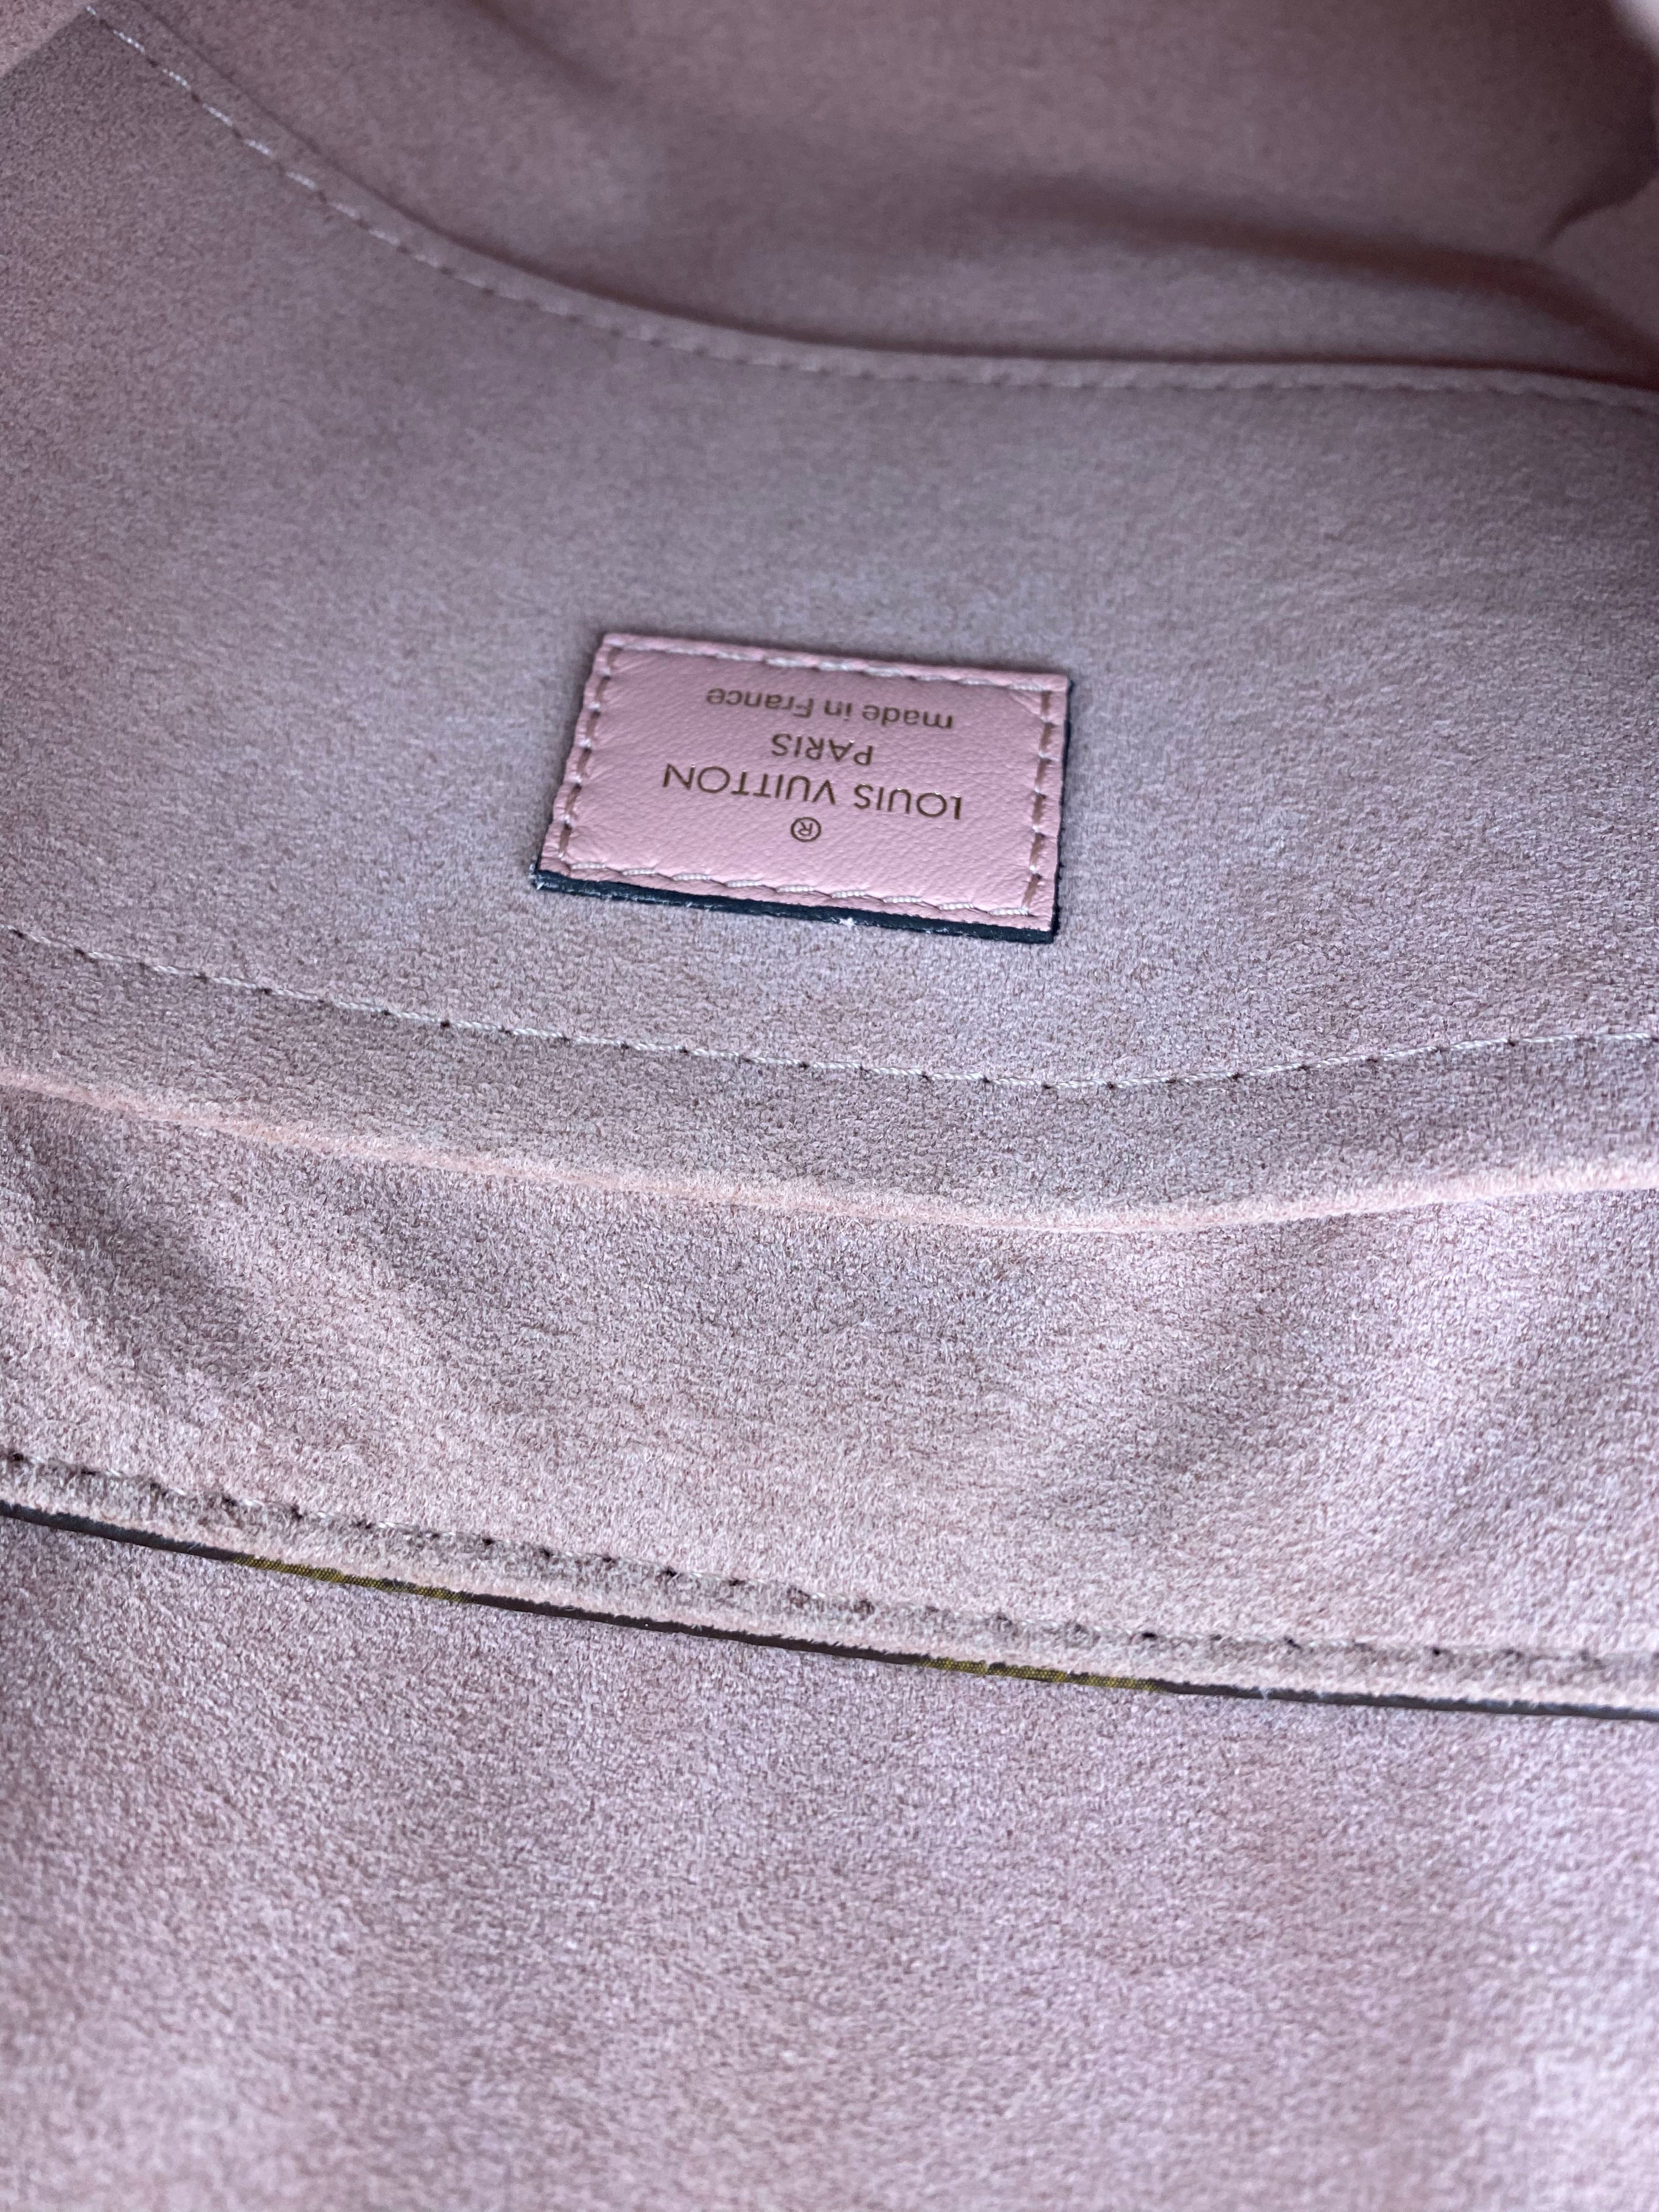 Louis Vuitton Rose Monogram Locky BB Bag